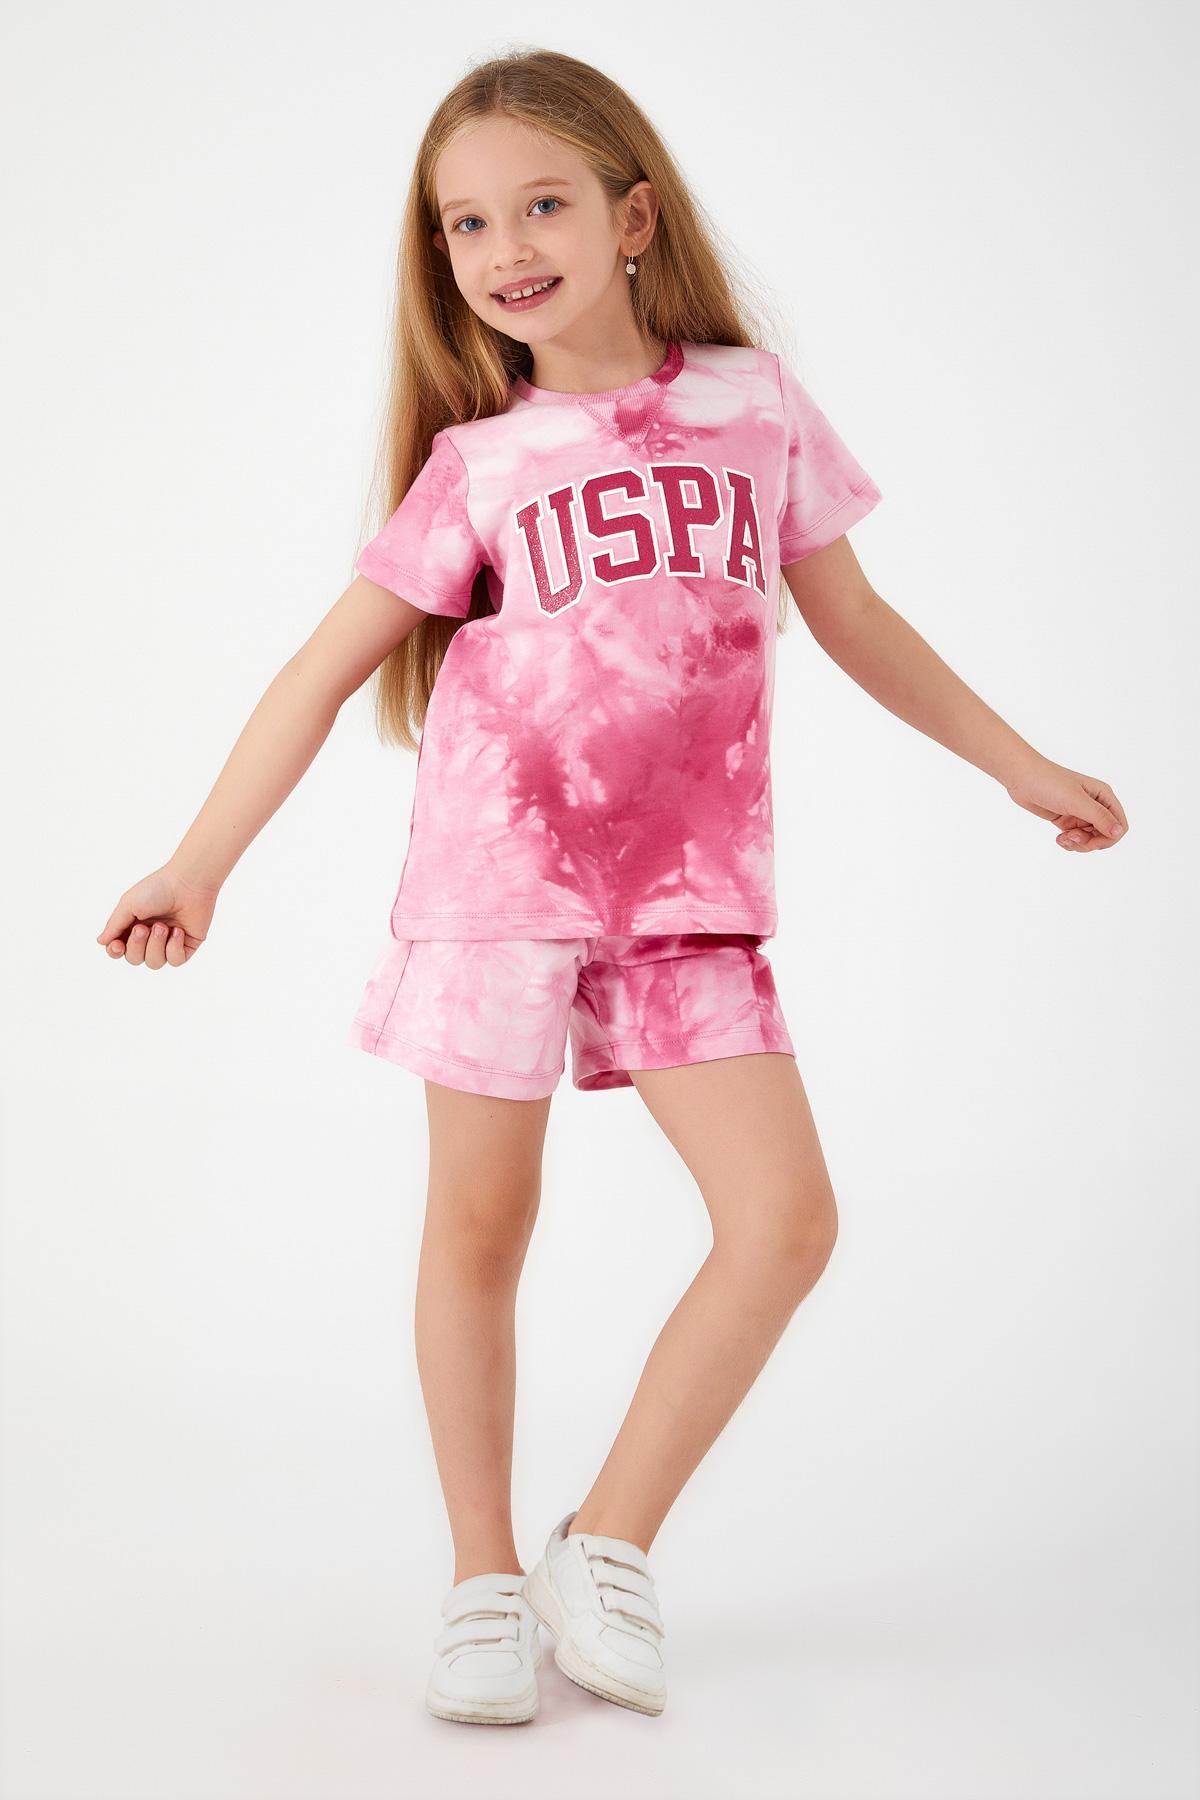 Selected image for U.S. POLO ASSN. Komplet šorc i majica za devojčice US1422-4 roze